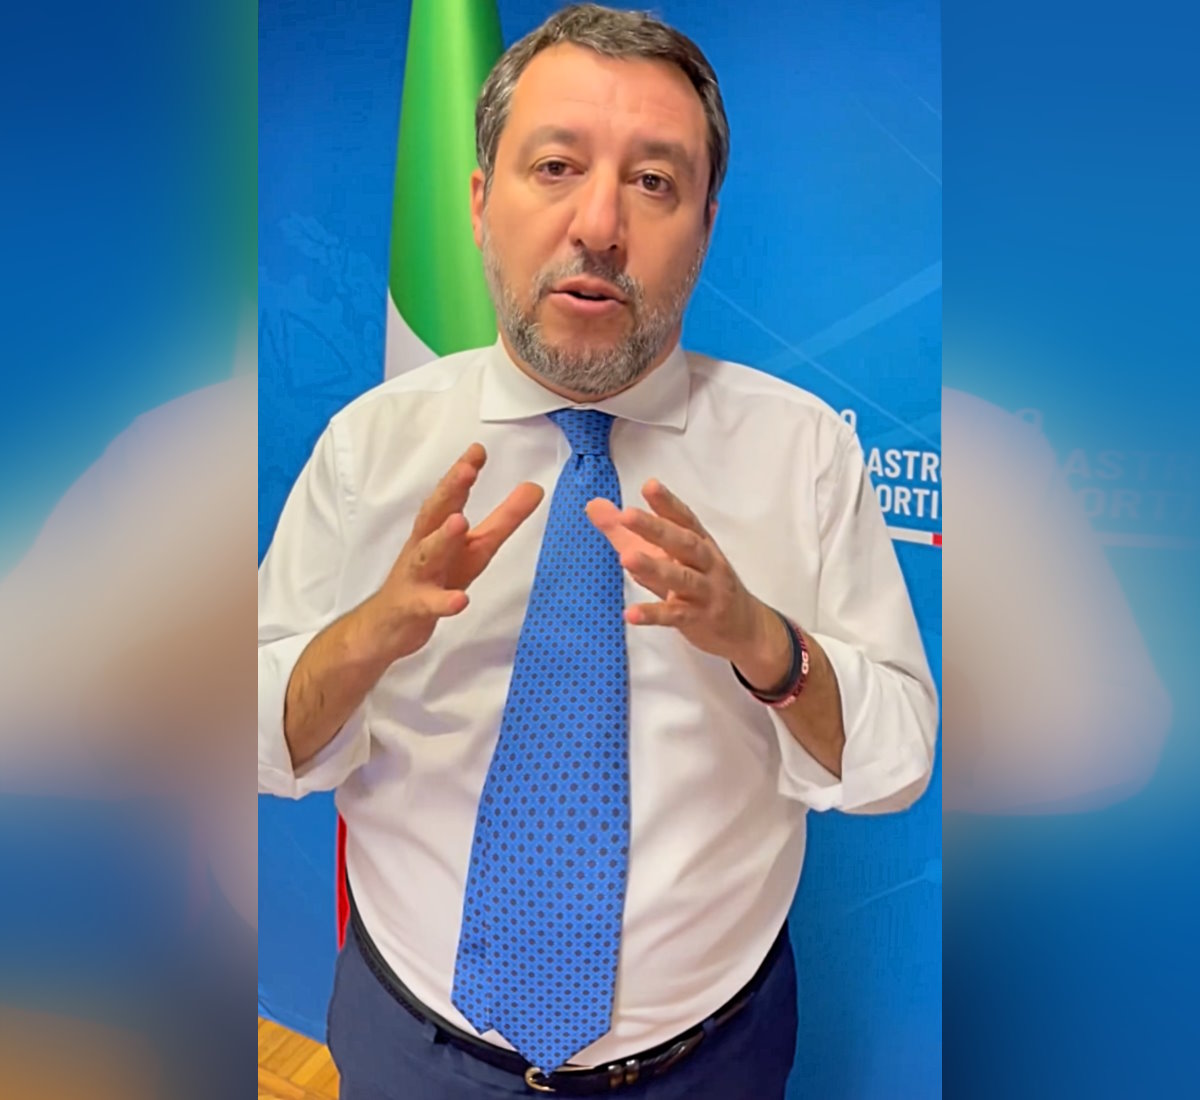 Bombardieri e Landini: la precettazione di Salvini contrasta con la legge 146 a tutela del lavoro